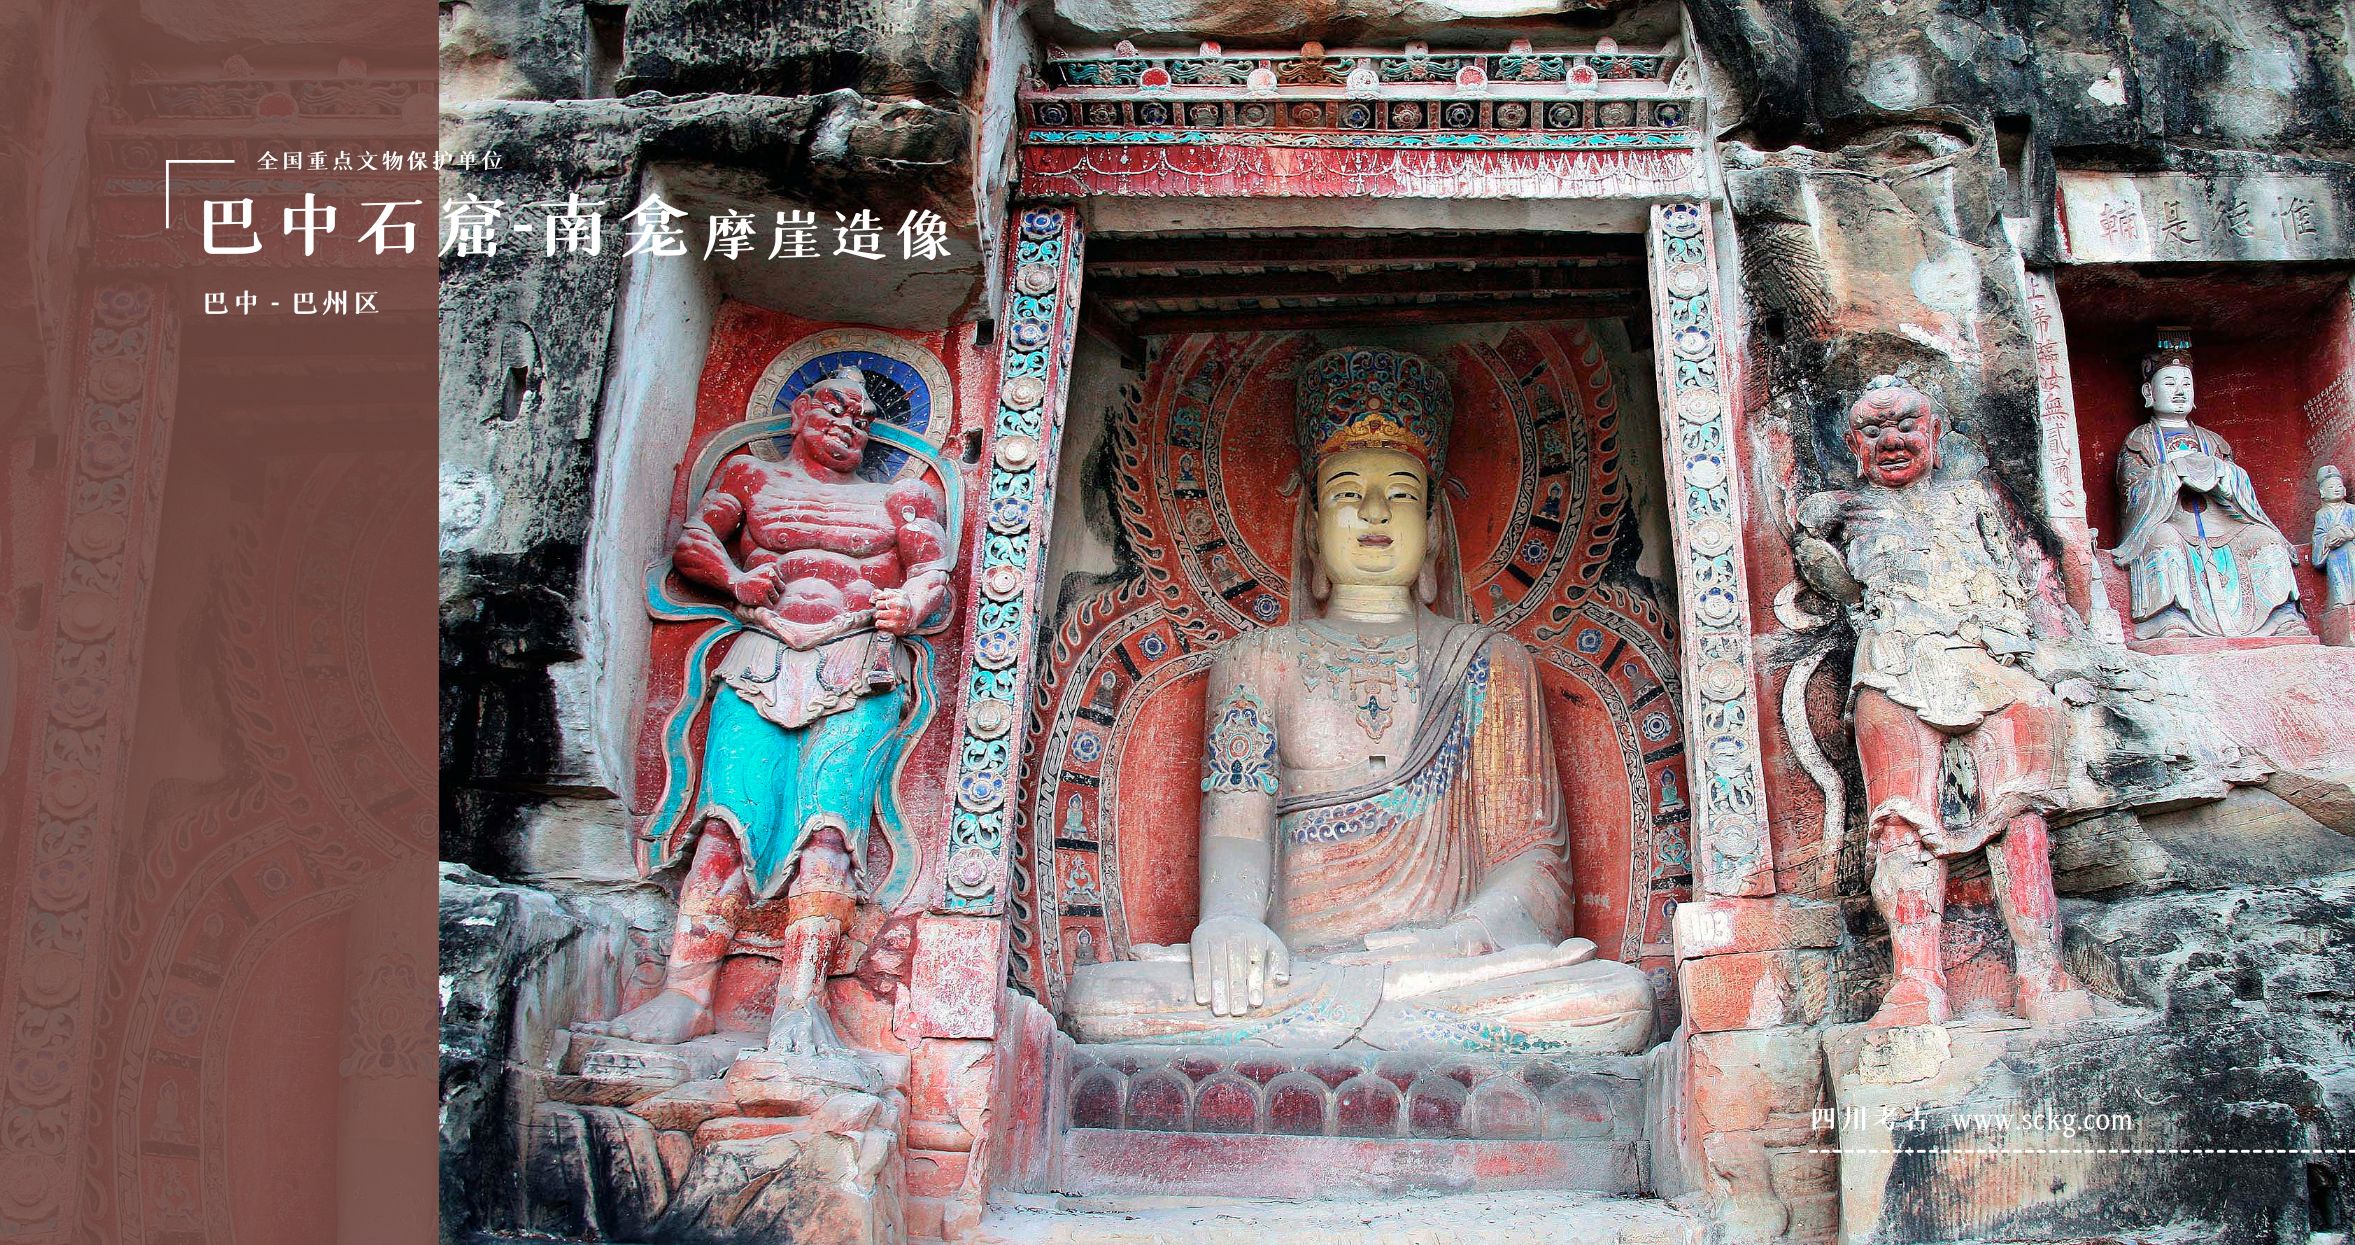 巴中石窟-南龛摩崖造像-第103龛菩提瑞像